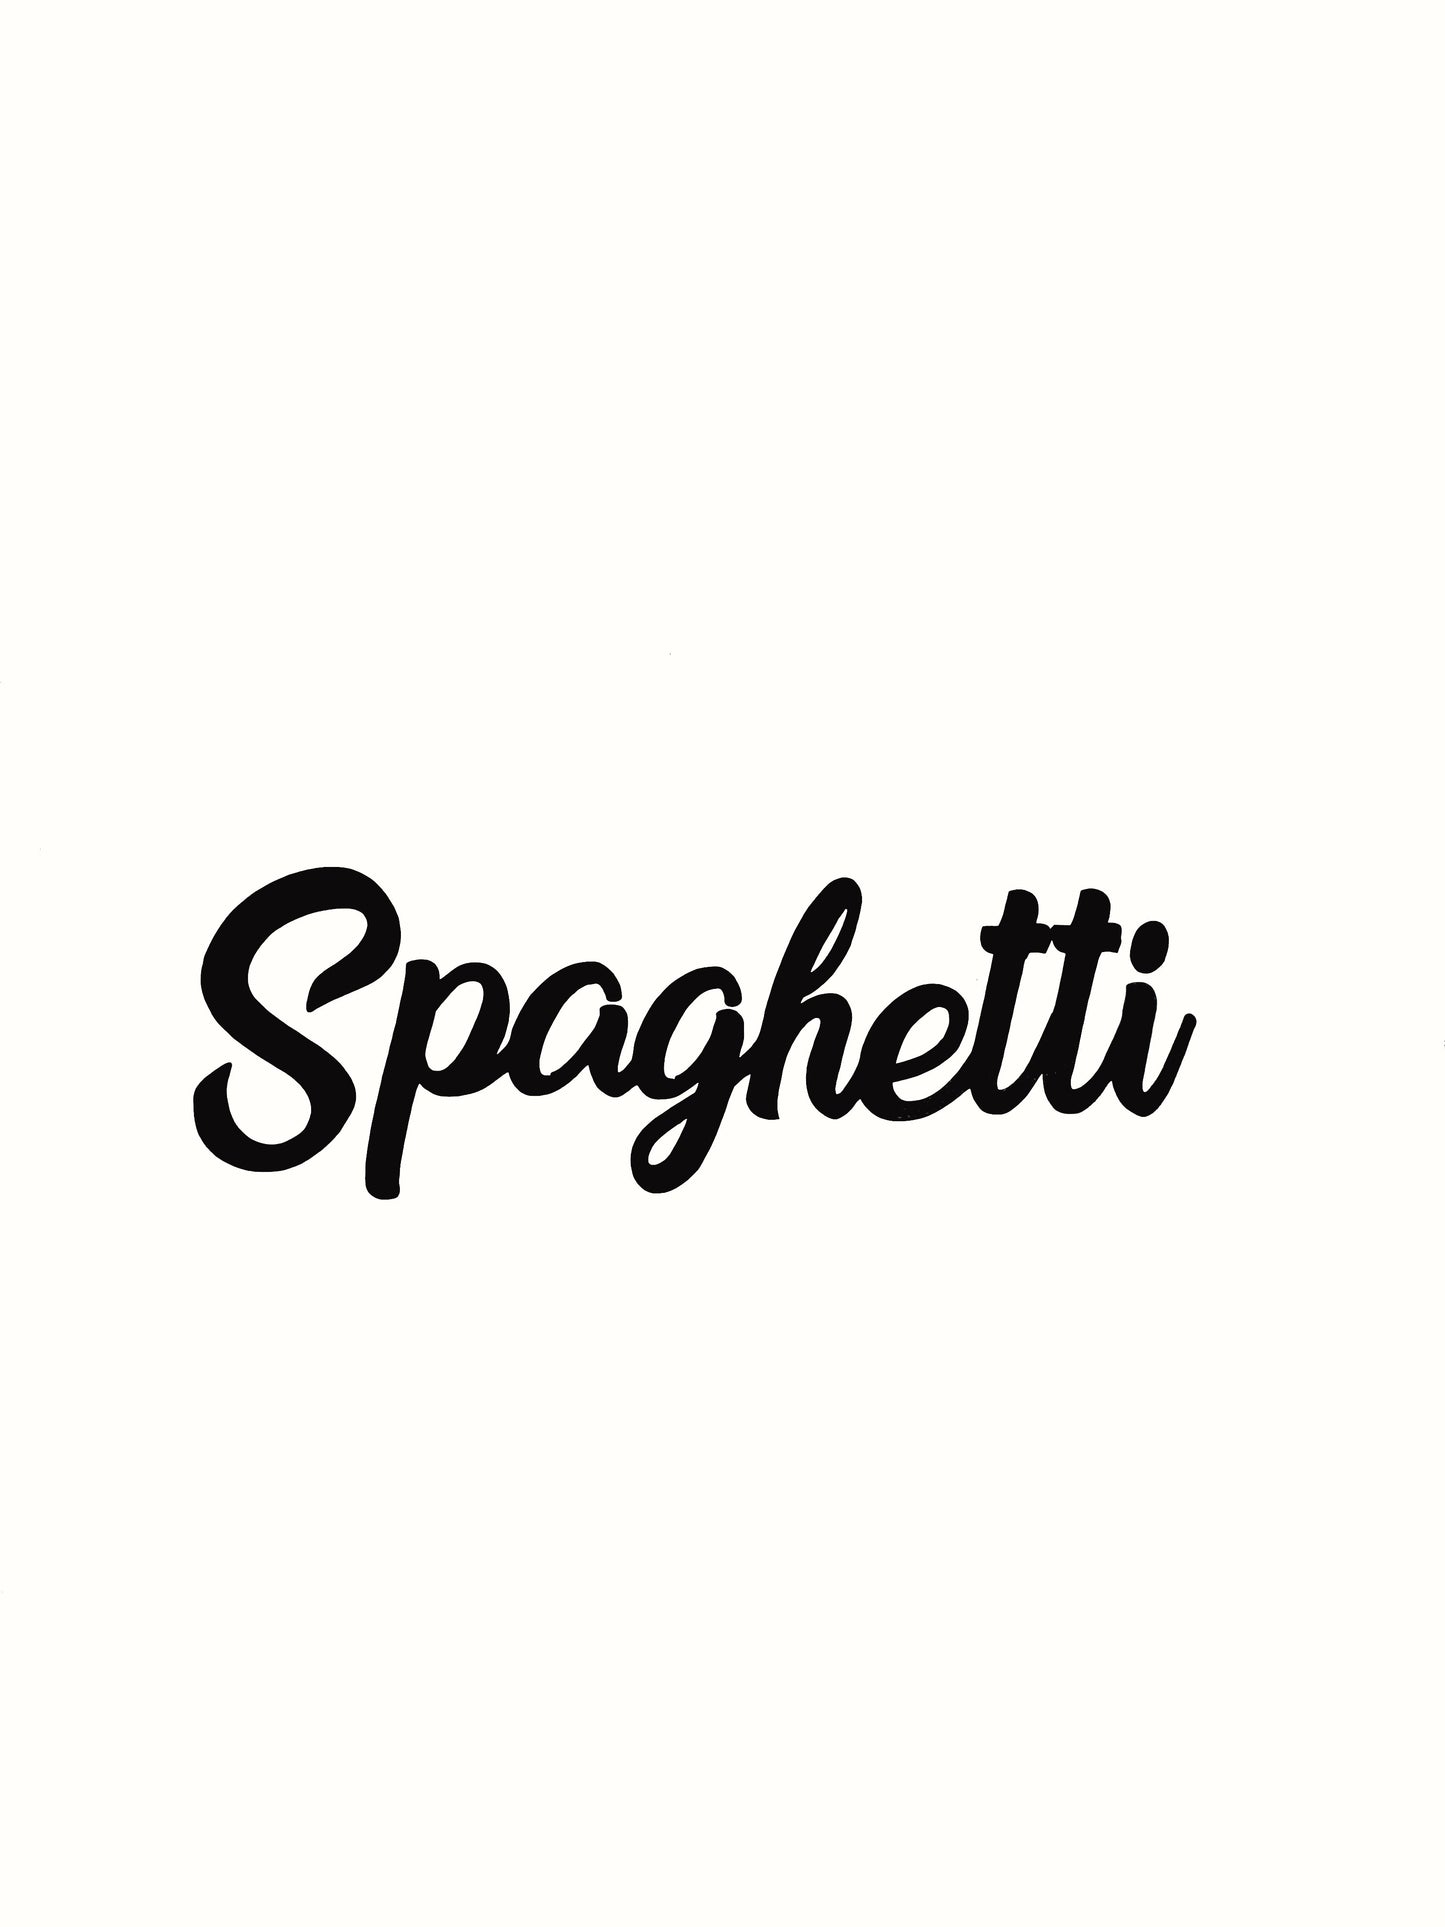 Spaghetti Kitchen Decal - Vinyl Sticker Decal